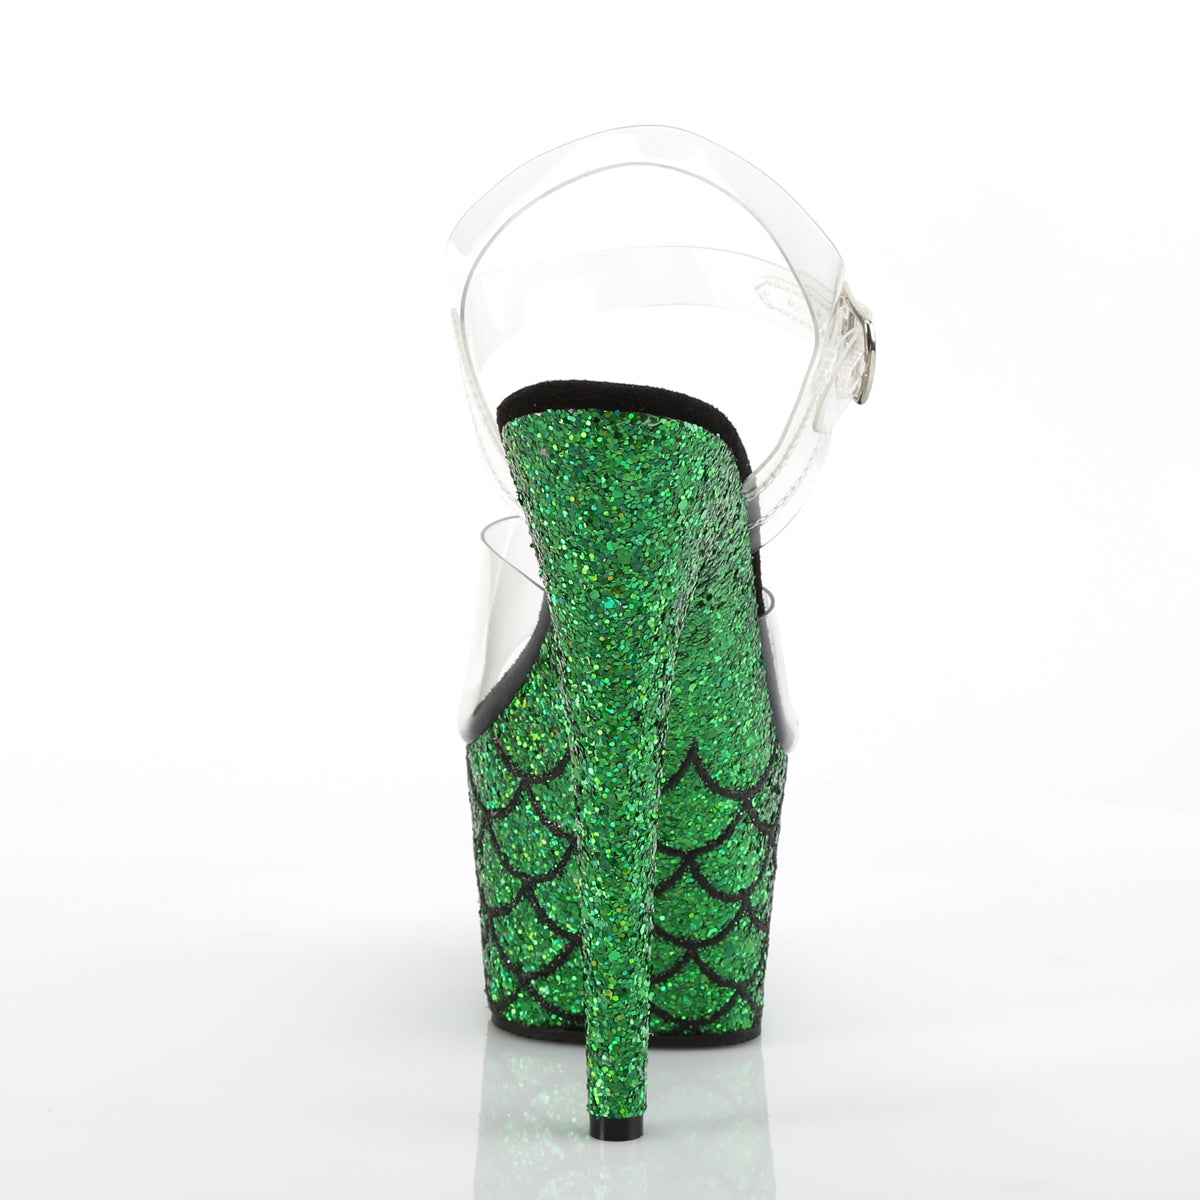 Pleaser Damen Sandalen ADORE-708msLG CLR / grün Multi Glitter